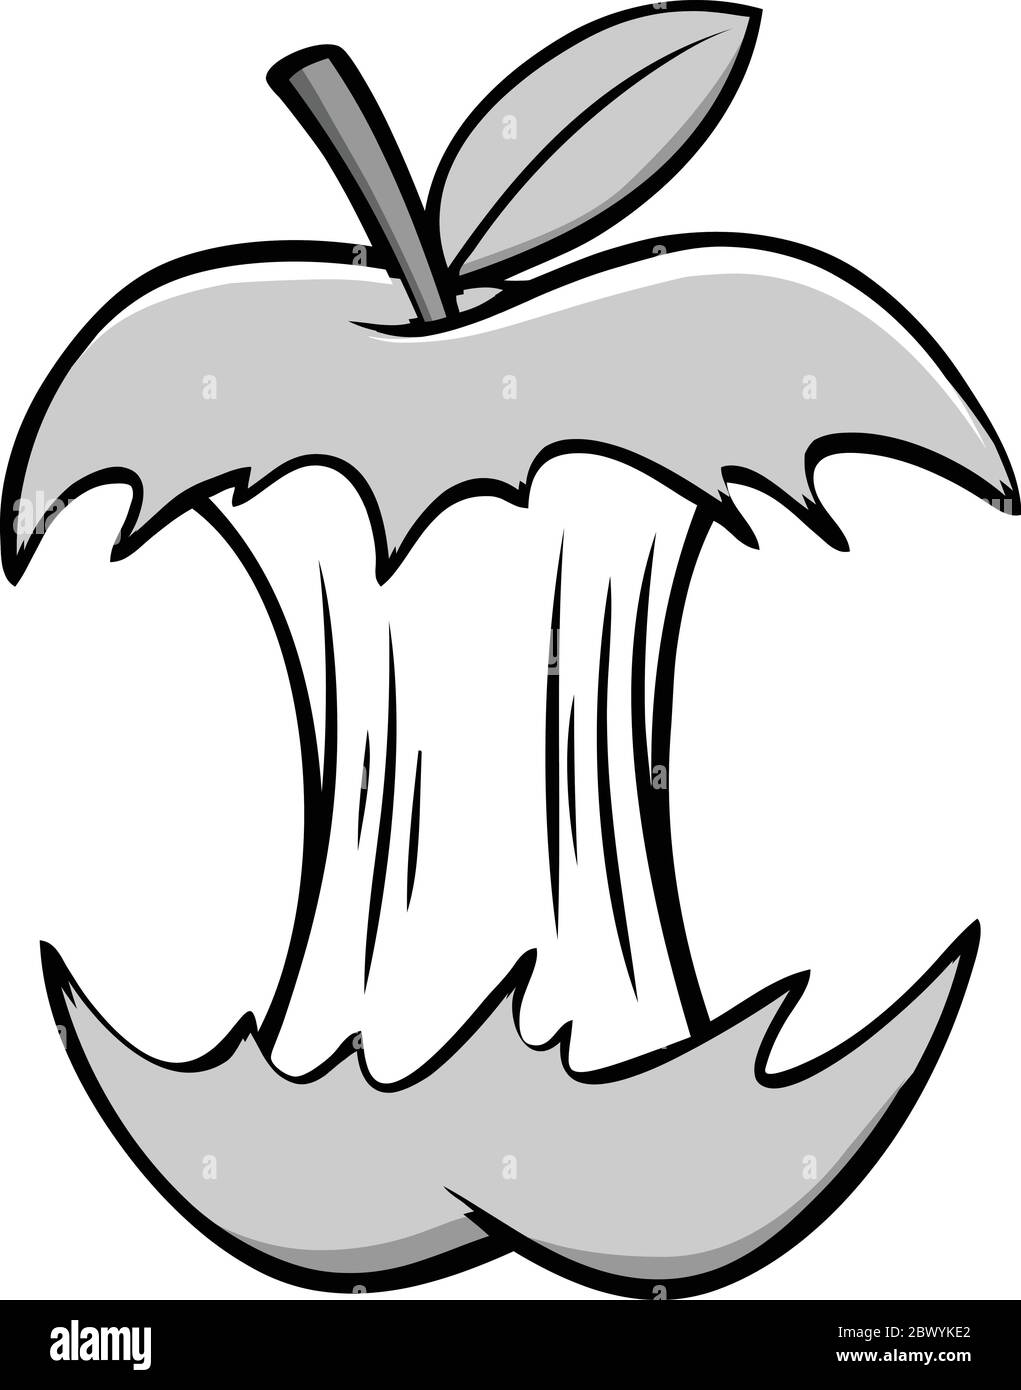 Apple Core : illustration d'un Apple Core. Illustration de Vecteur